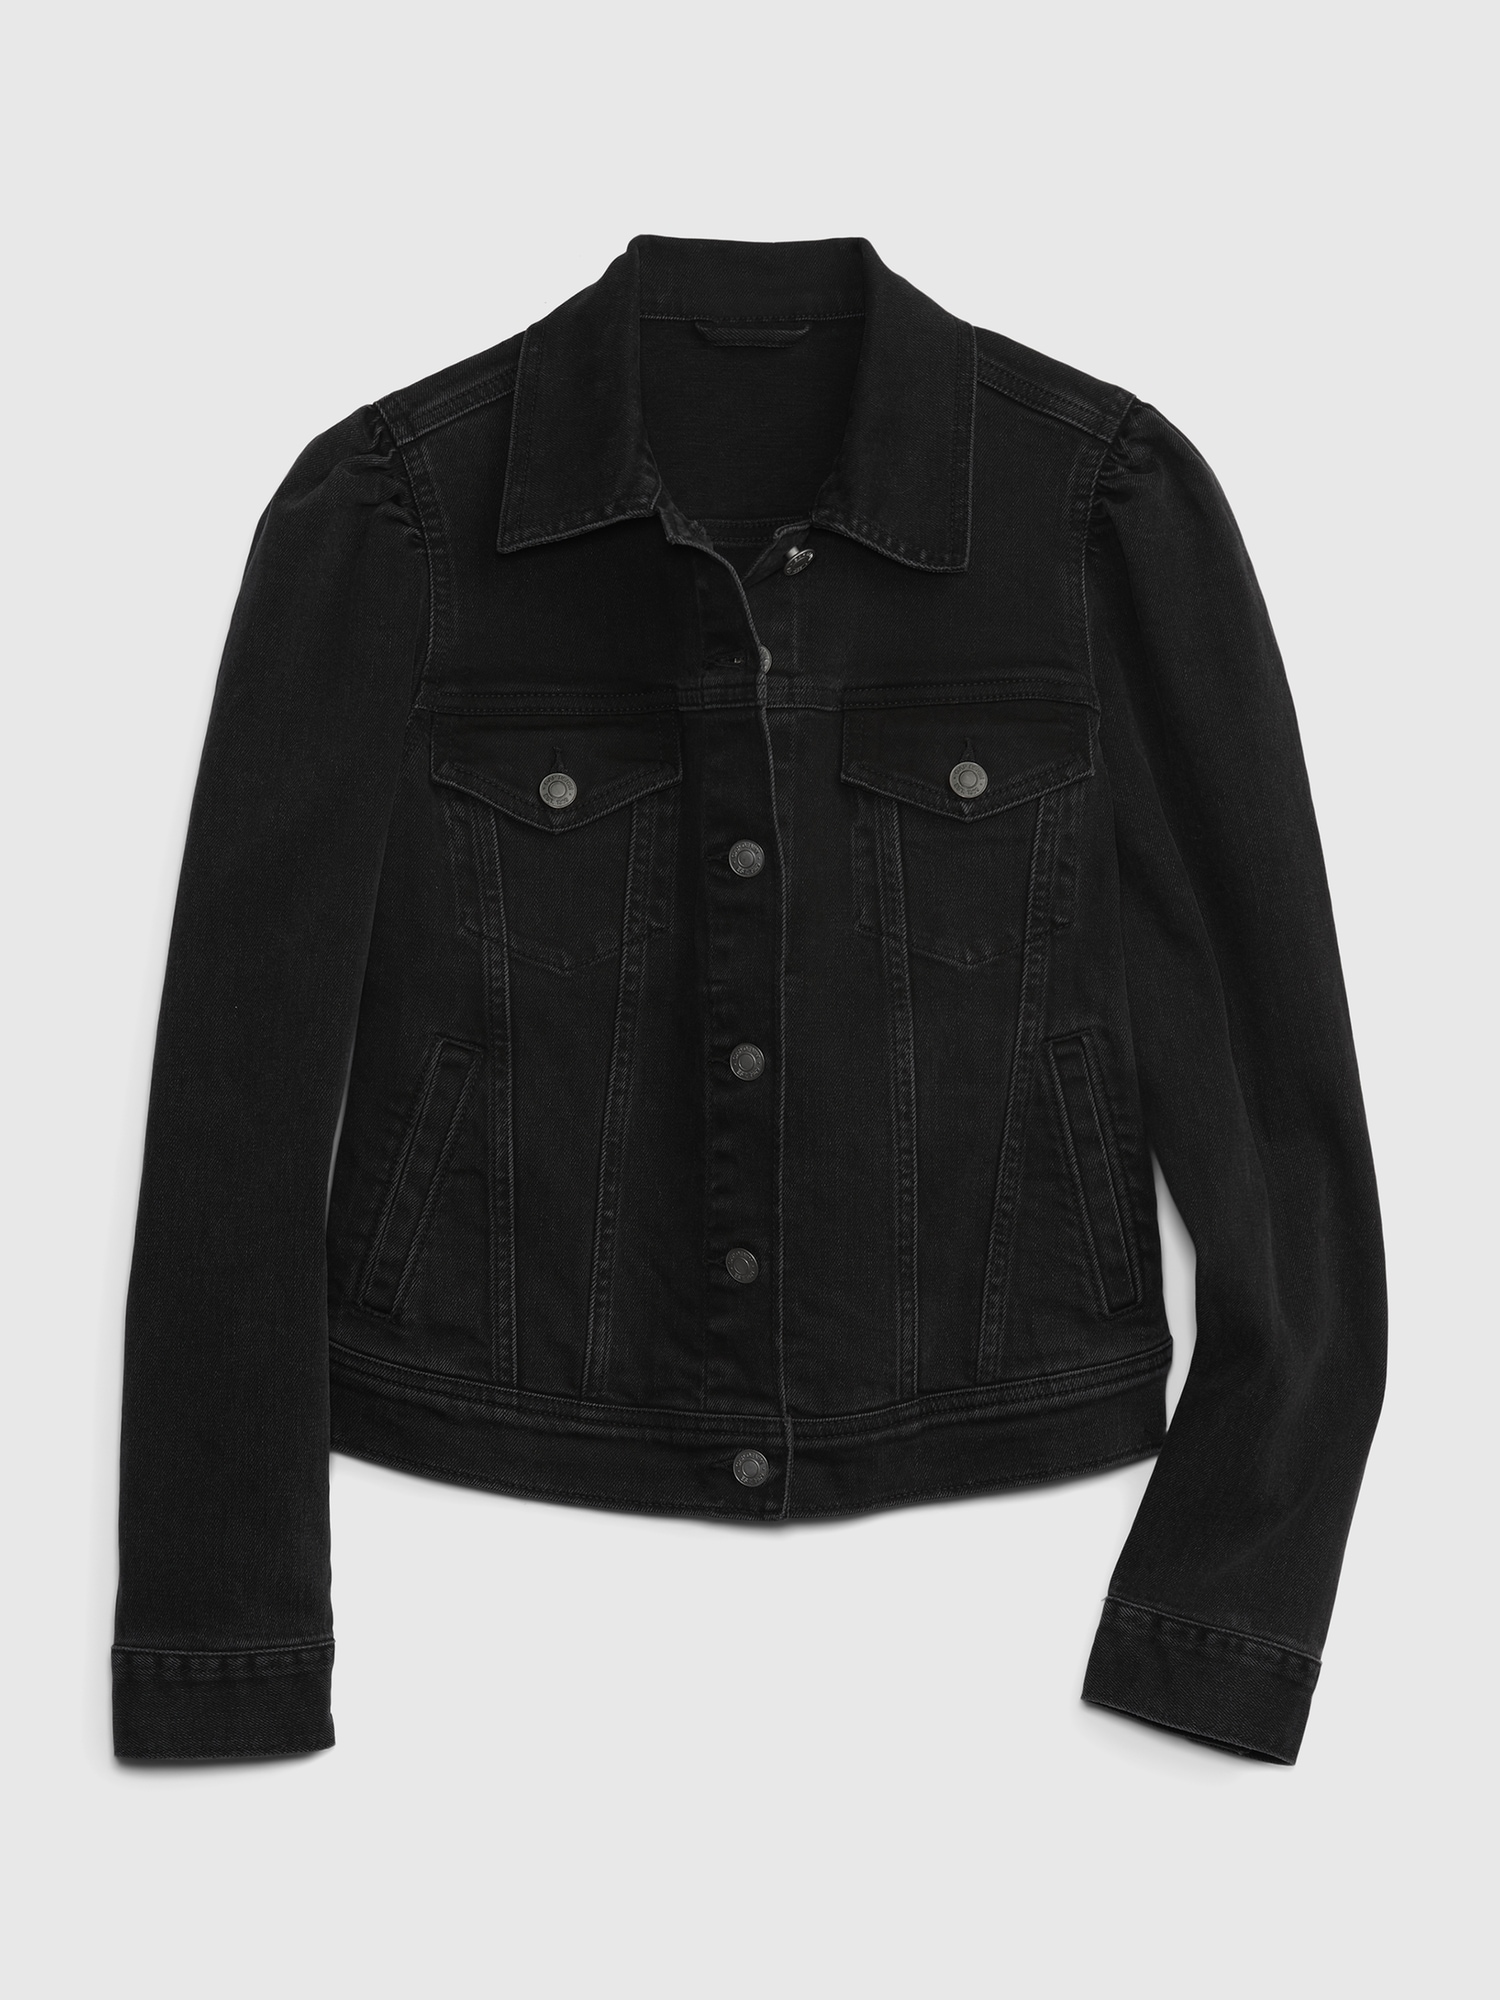 Wrangler Sherpa Lined Black Denim Jacket for Men – Pard's Western Shop Inc.